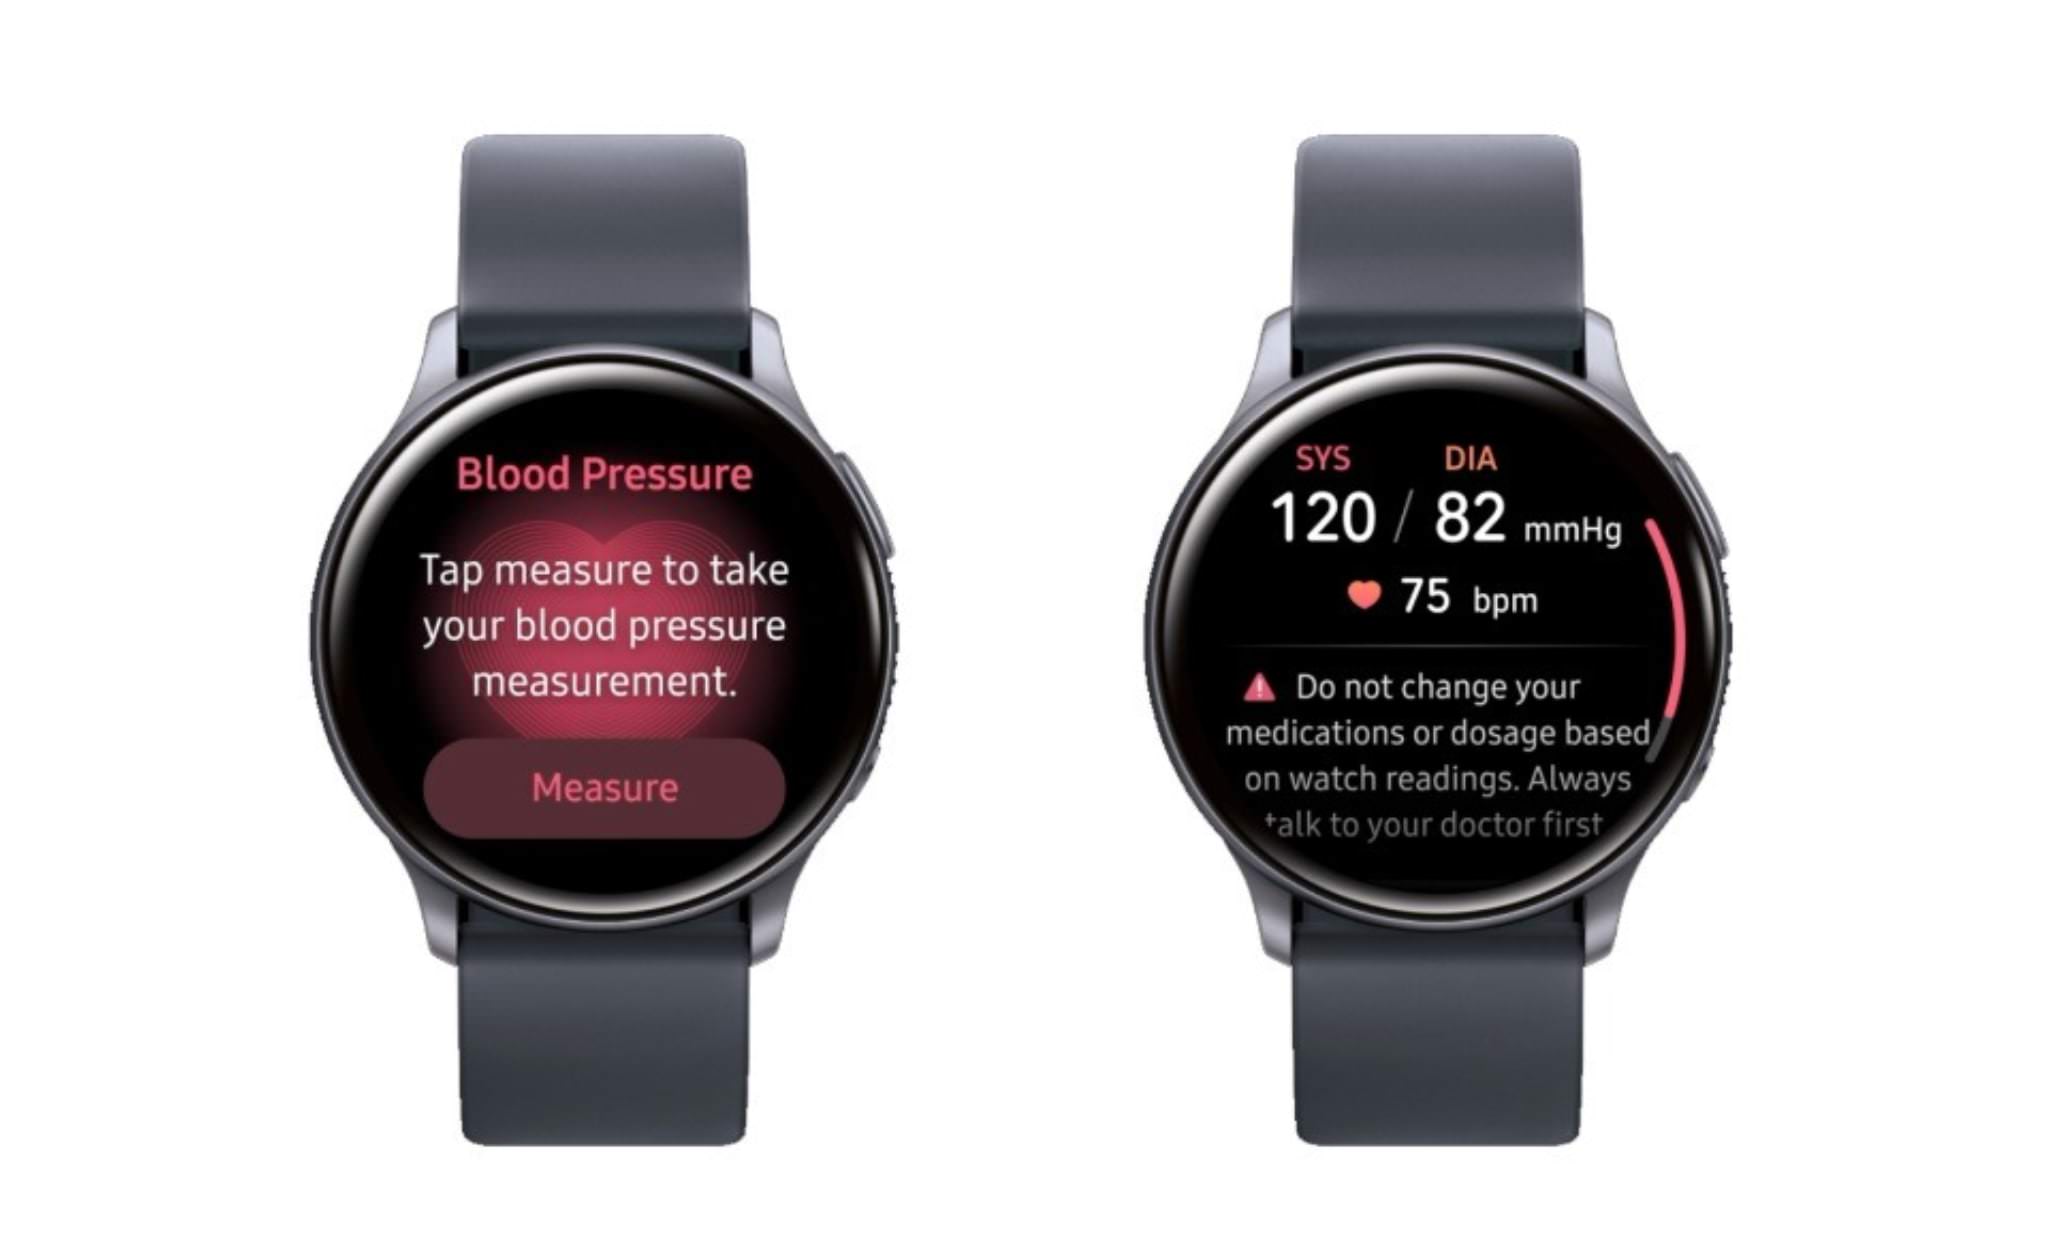 Medir la presión arterial con un smartwatch es posible ¿Cómo lo